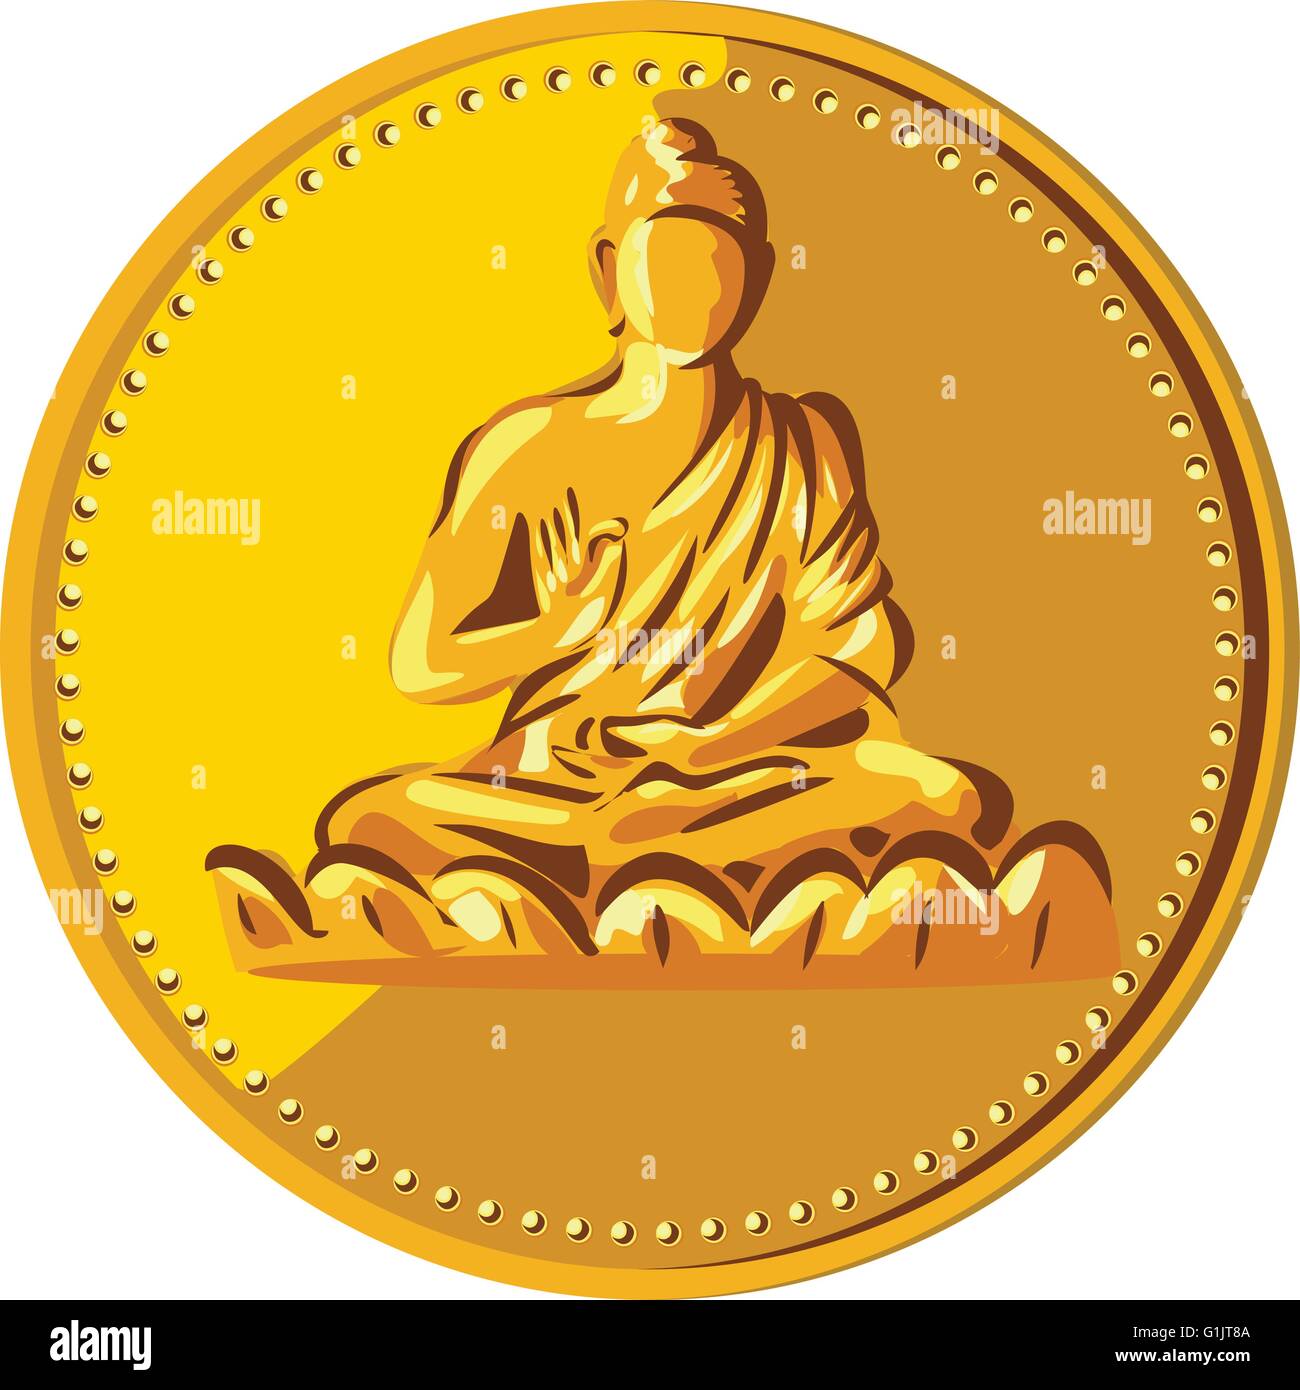 Abbildung einer Goldmünze Medaille zeigt Silhouette des Gautama Buddha, Siddhārtha Gautama Shakyamuni Buddha im Lotussitz angesehen von vorne im retro-Stil gemacht. Stock Vektor